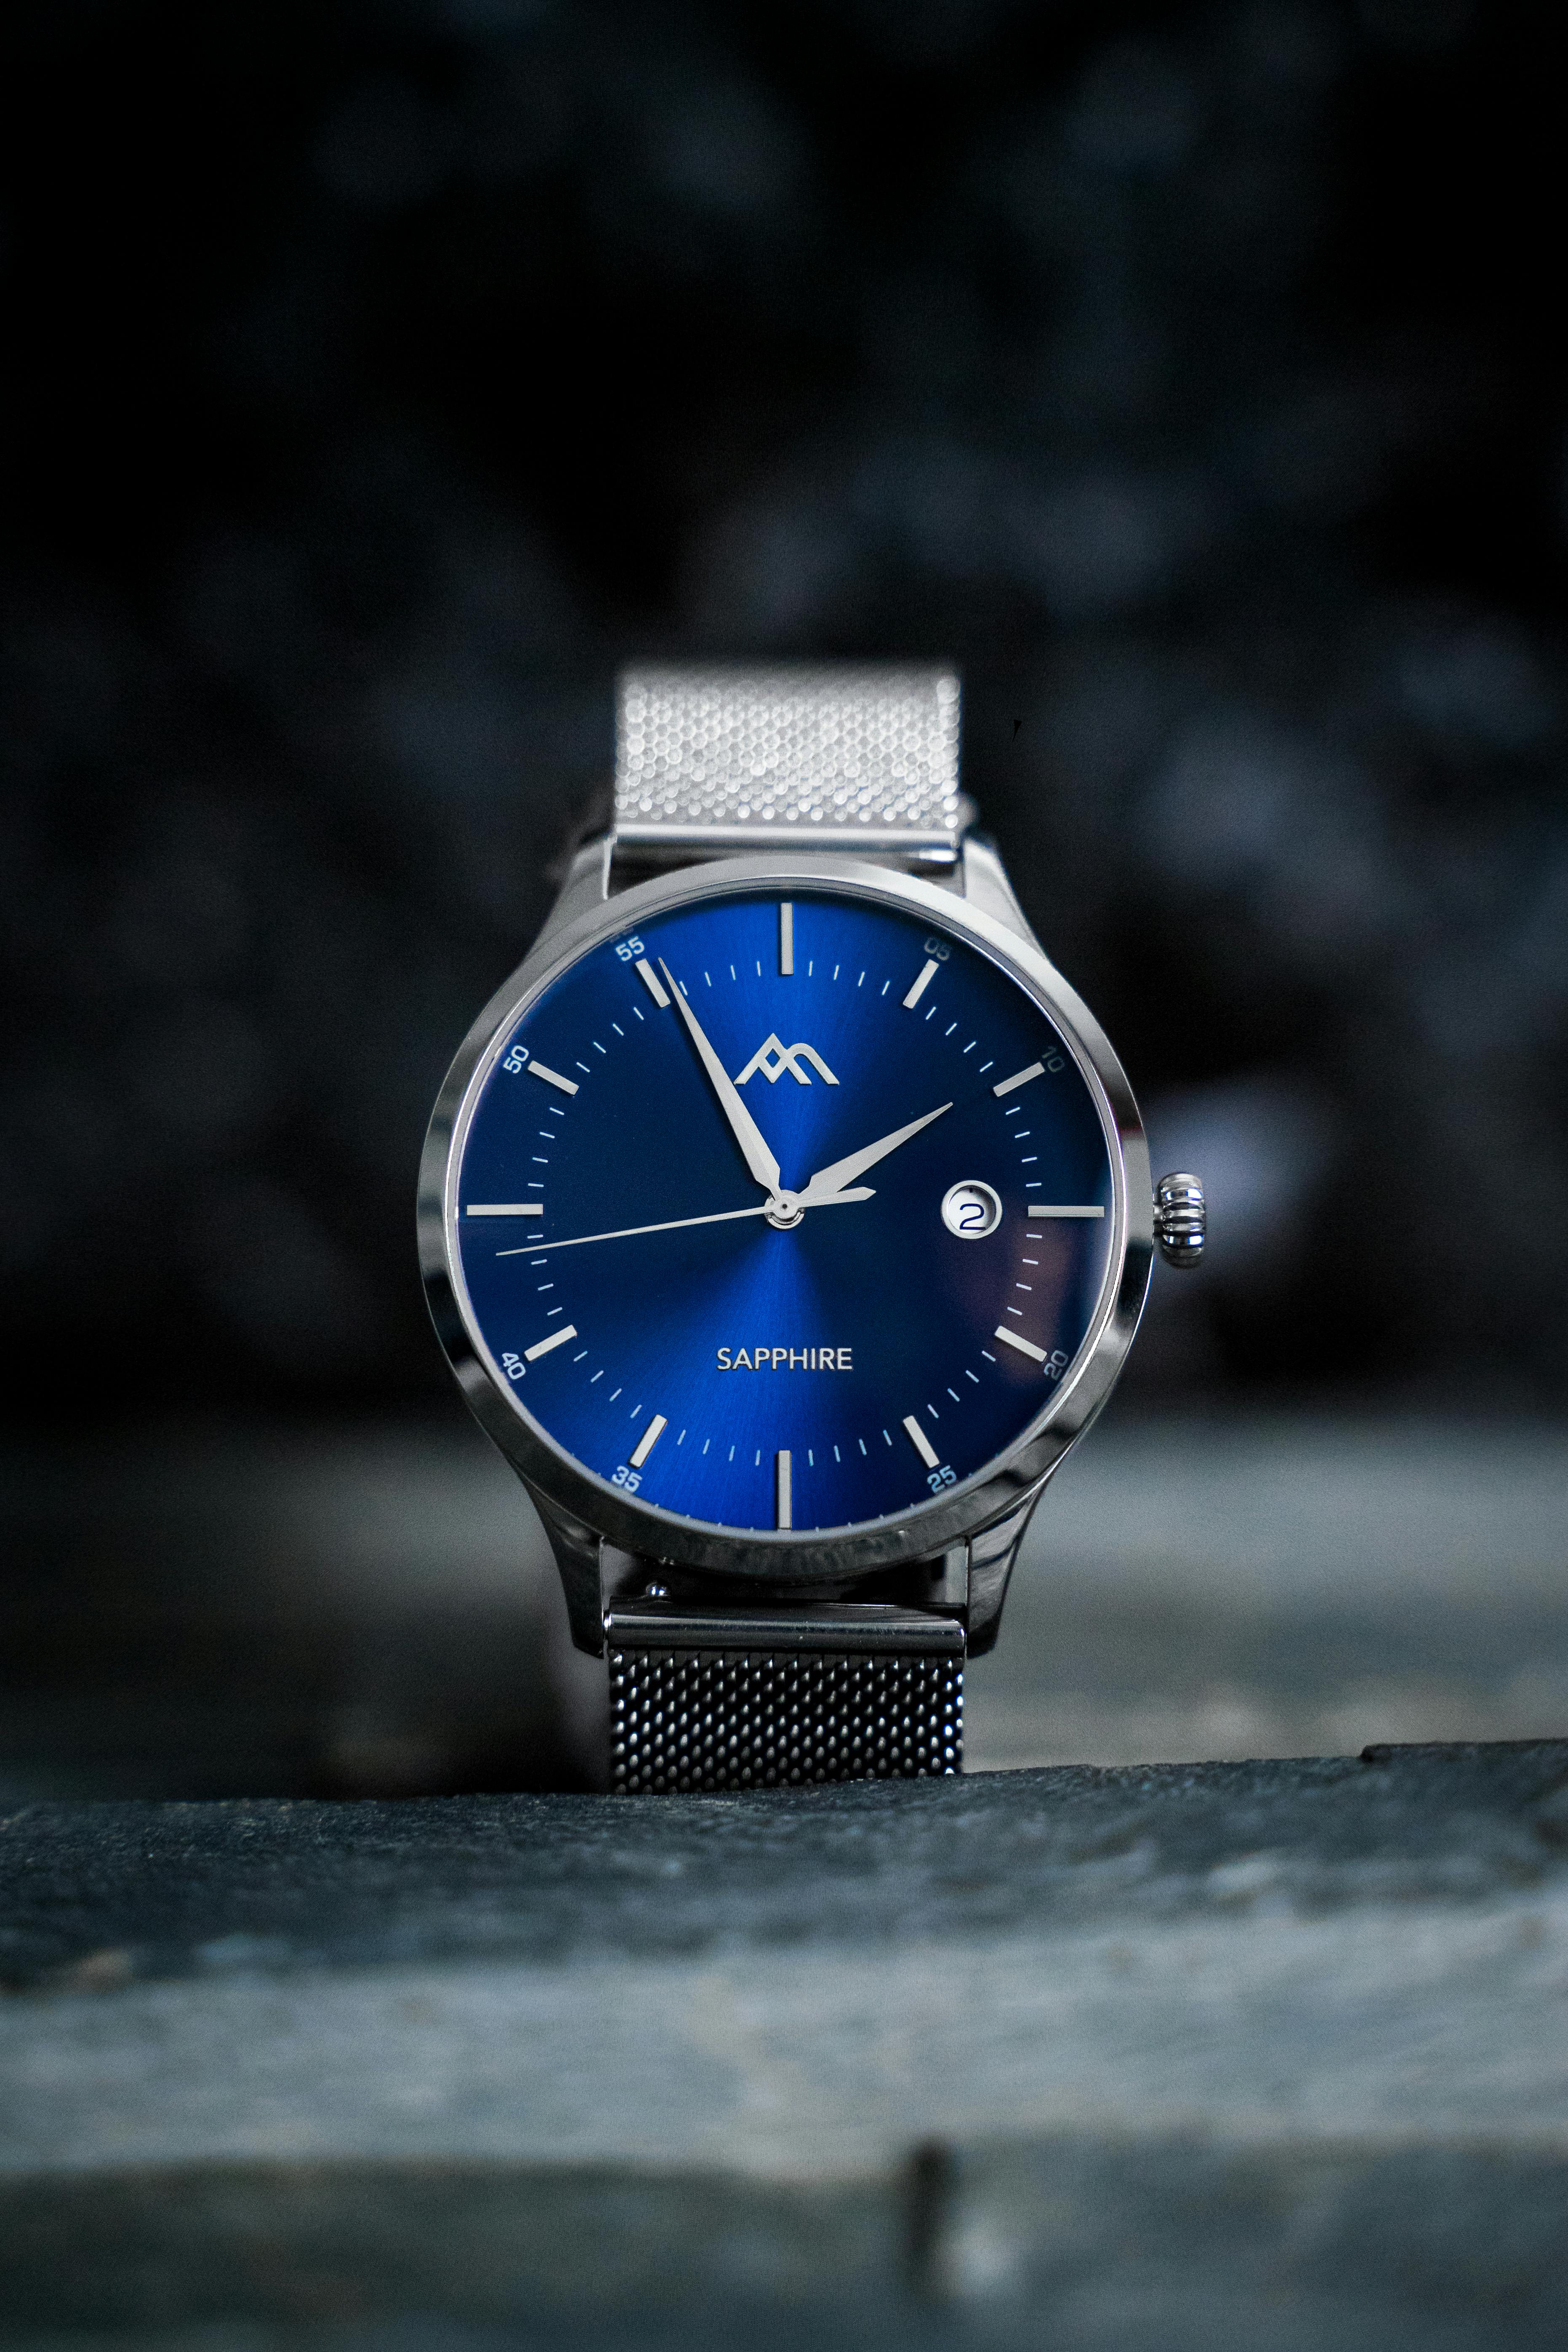 Men's Watches Stainless Steel Waterproof Analog Wrist Watch 6.11 NEED  REPAIR | eBay